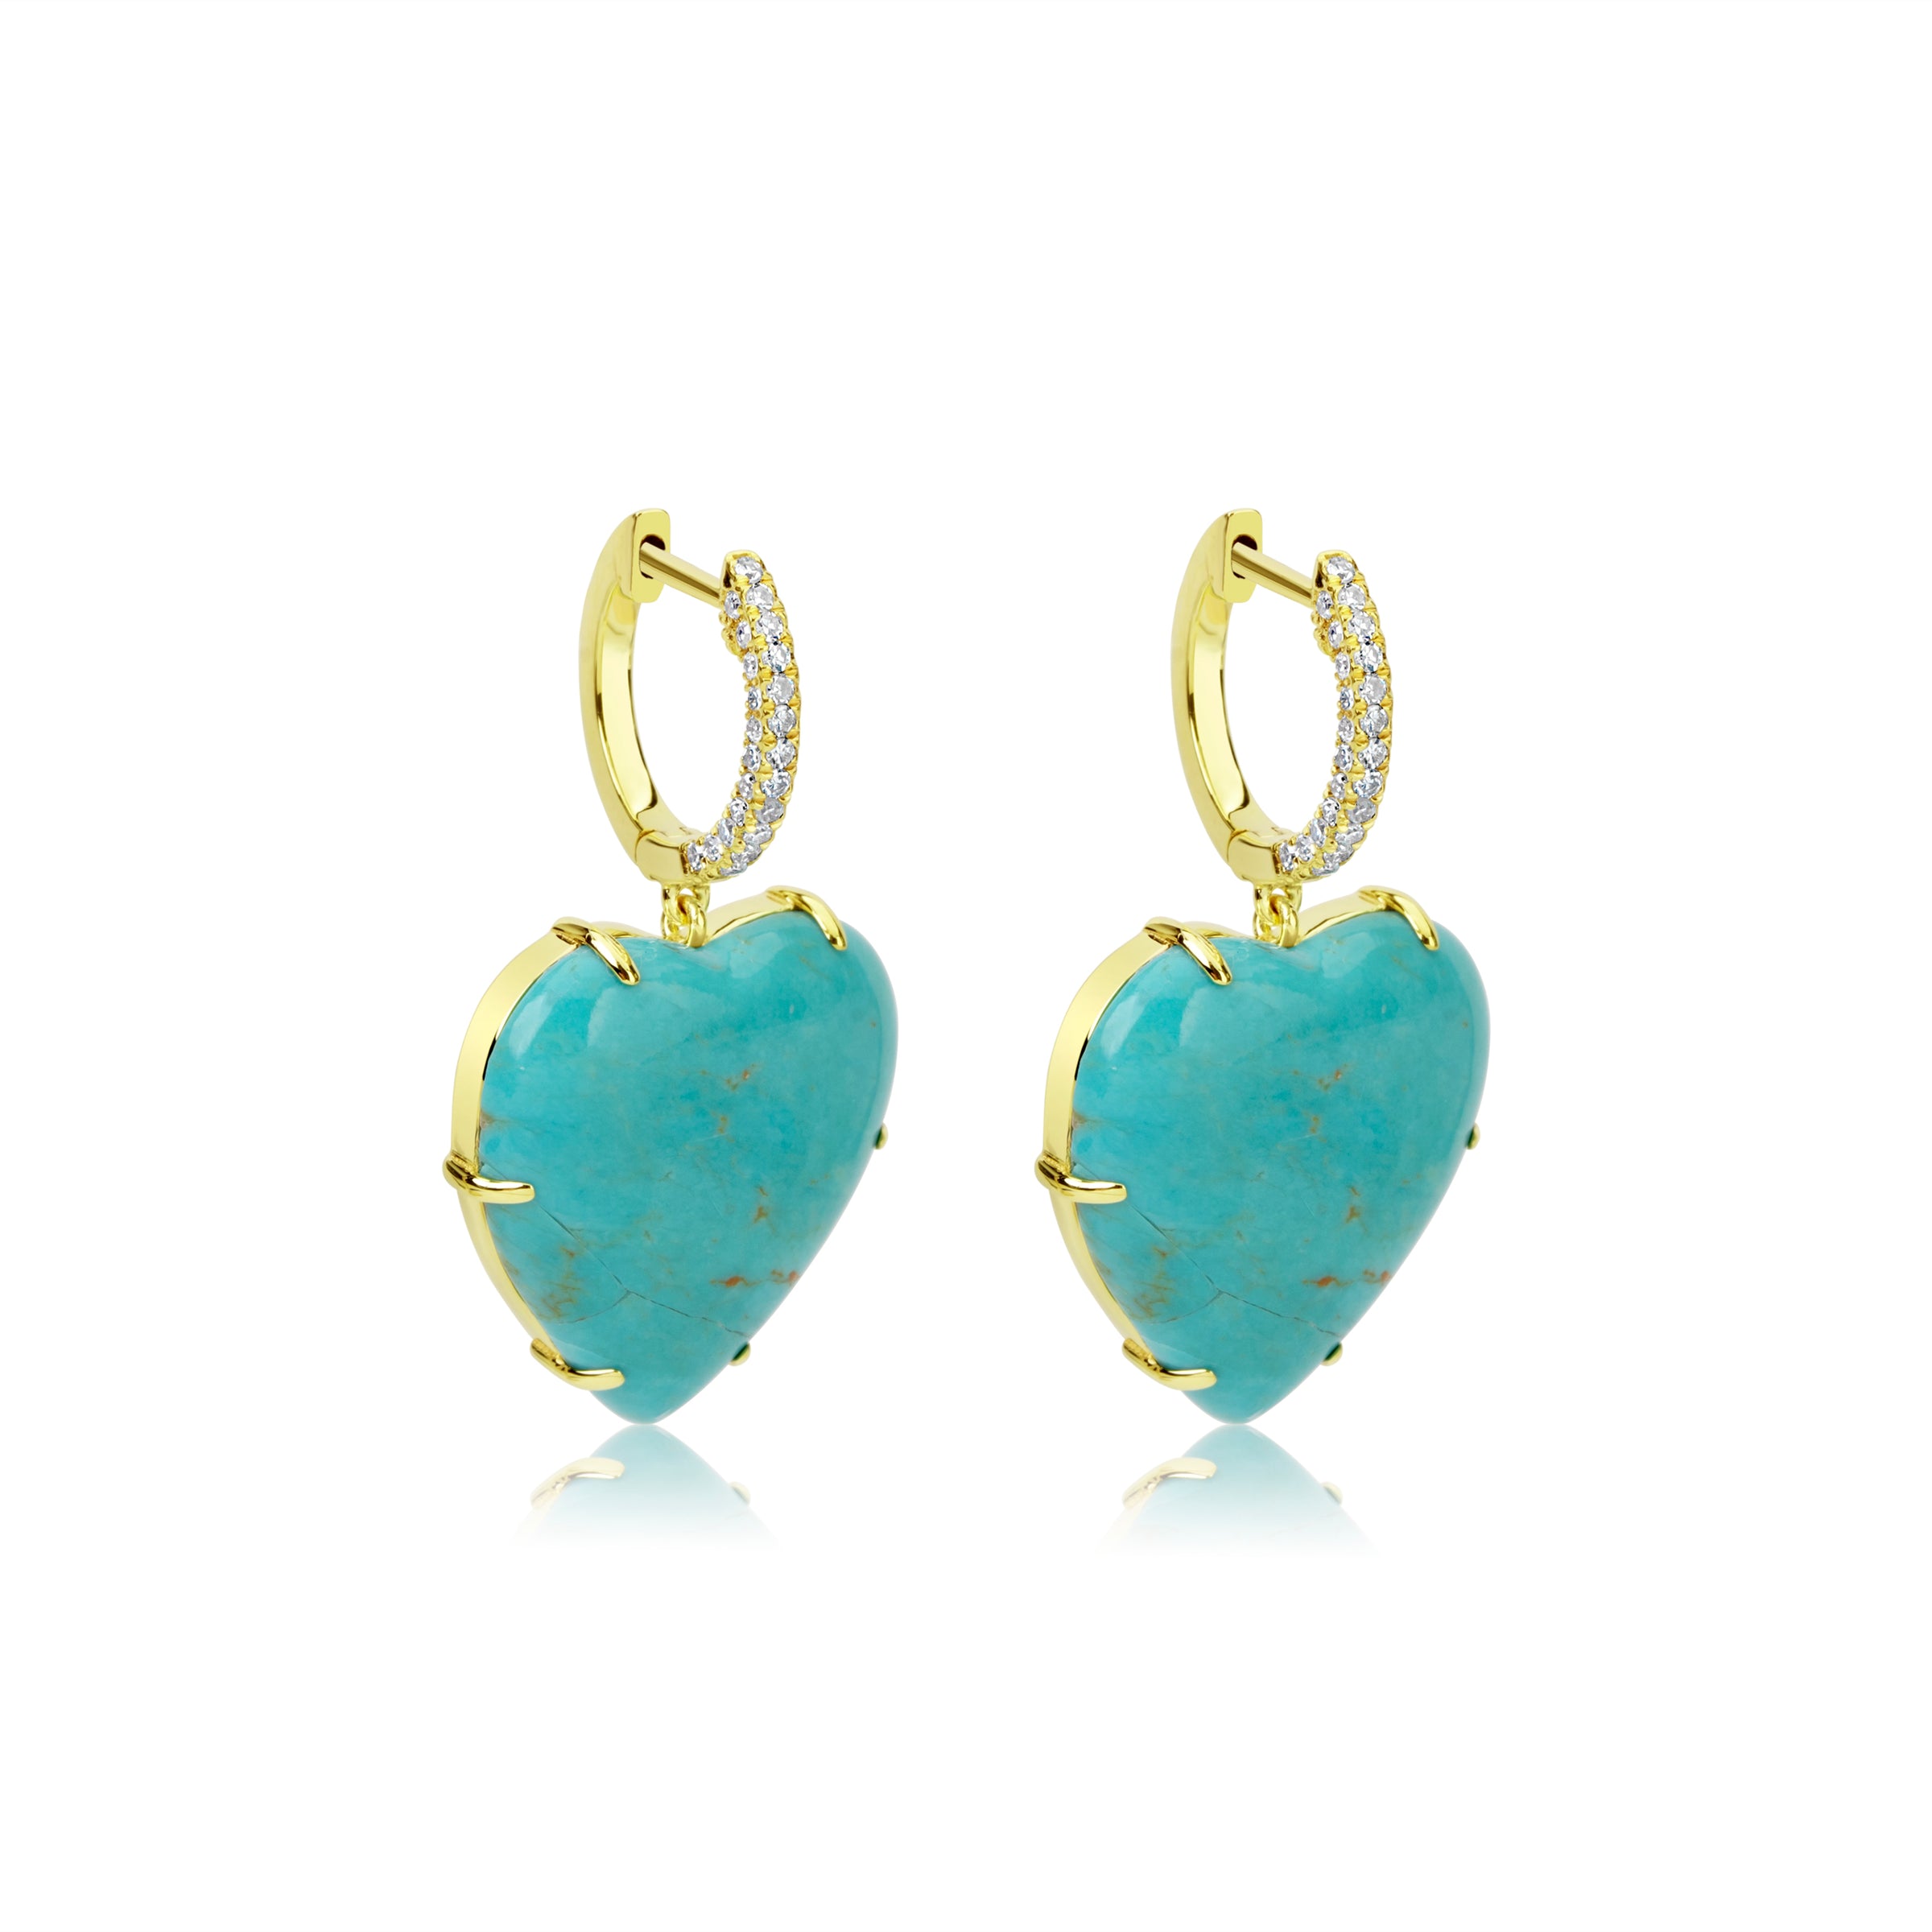 Positano Party Beaded Earrings in Light Turquoise | Beaded earrings, Turquoise  statement earrings, Beaded